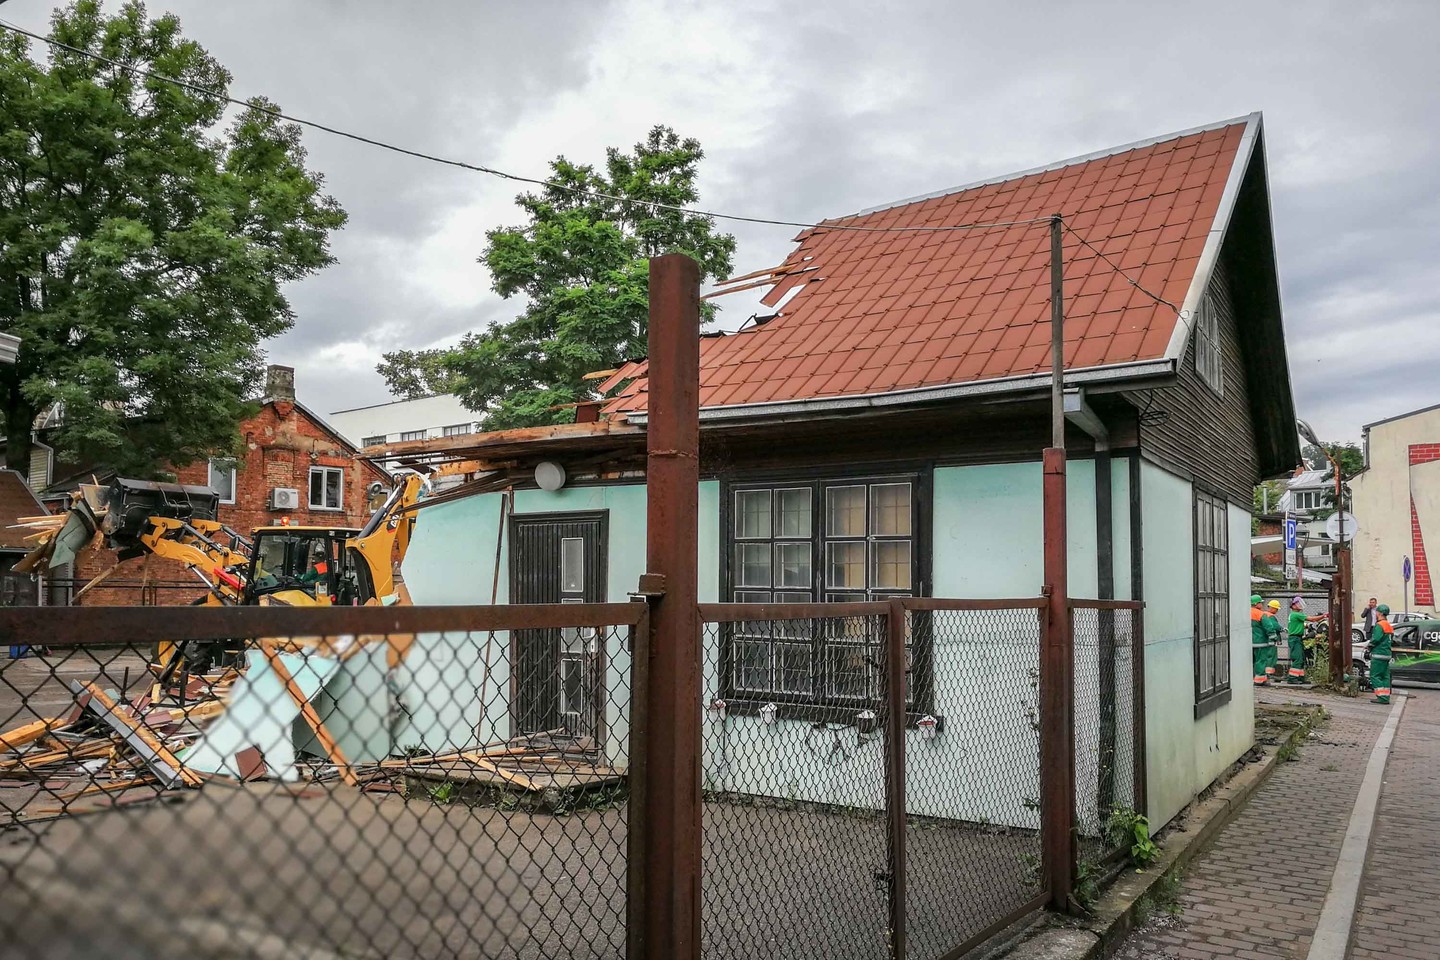  Nelegalūs pastatai Kauno senamiestyje skaičiuoja pas kutines dienas. <br> Kauno savivaldybės nuotr.